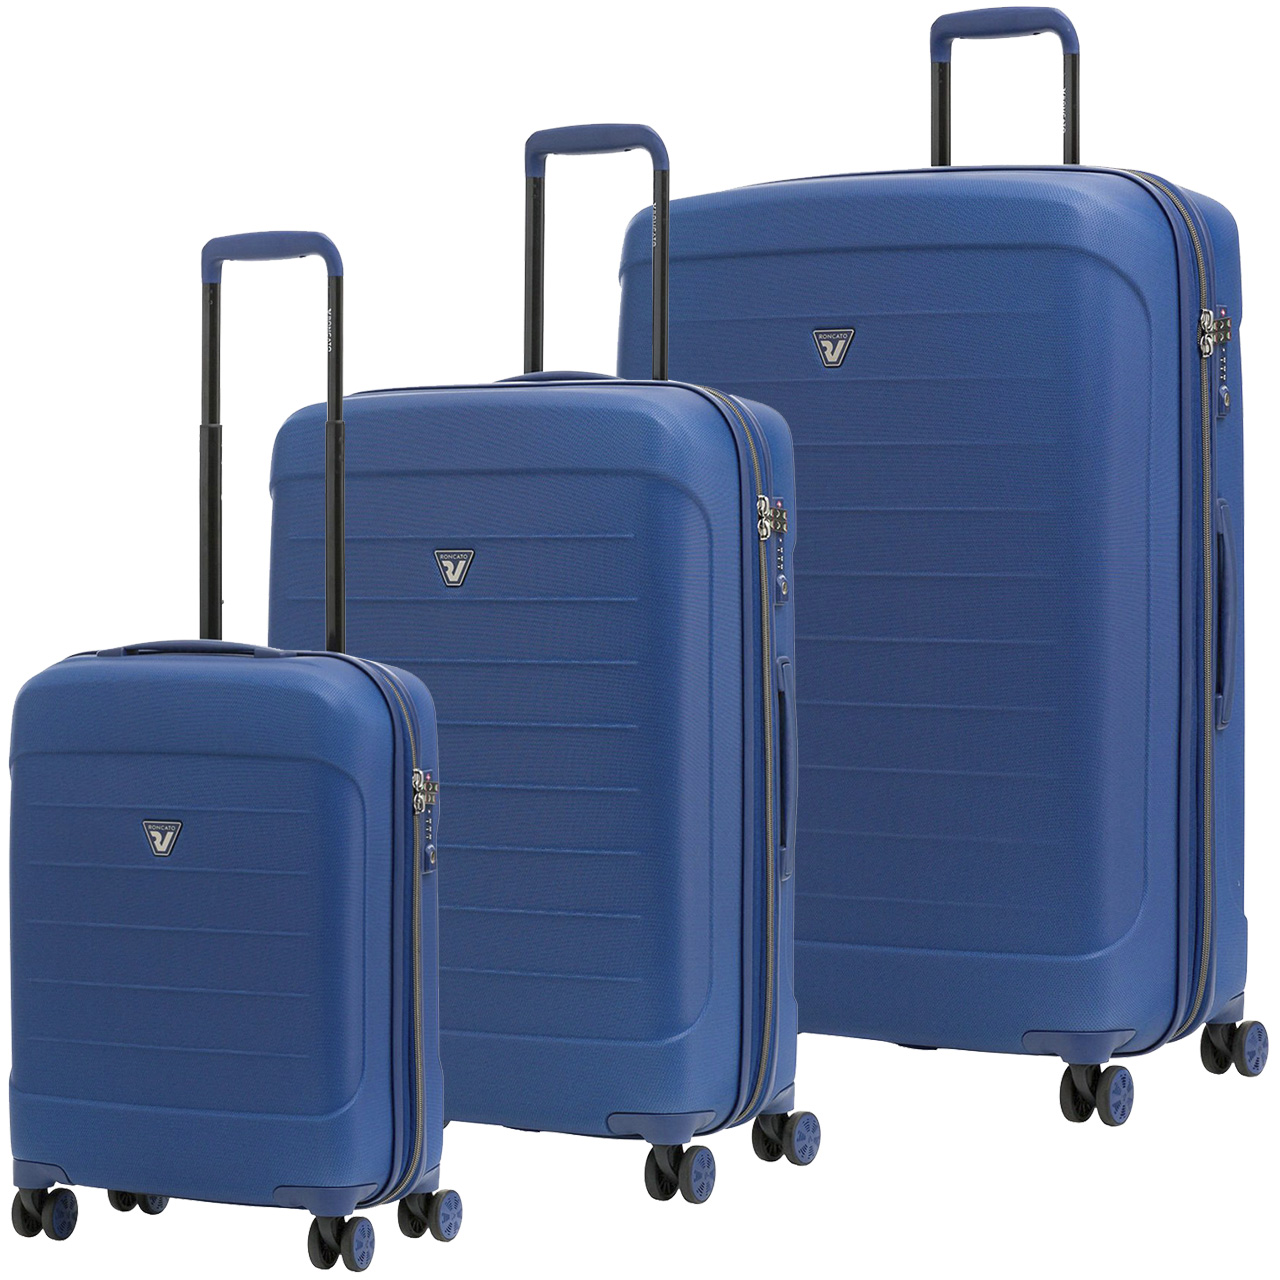 مجموعه سه عددی چمدان رونکاتو مدل FL - 419151